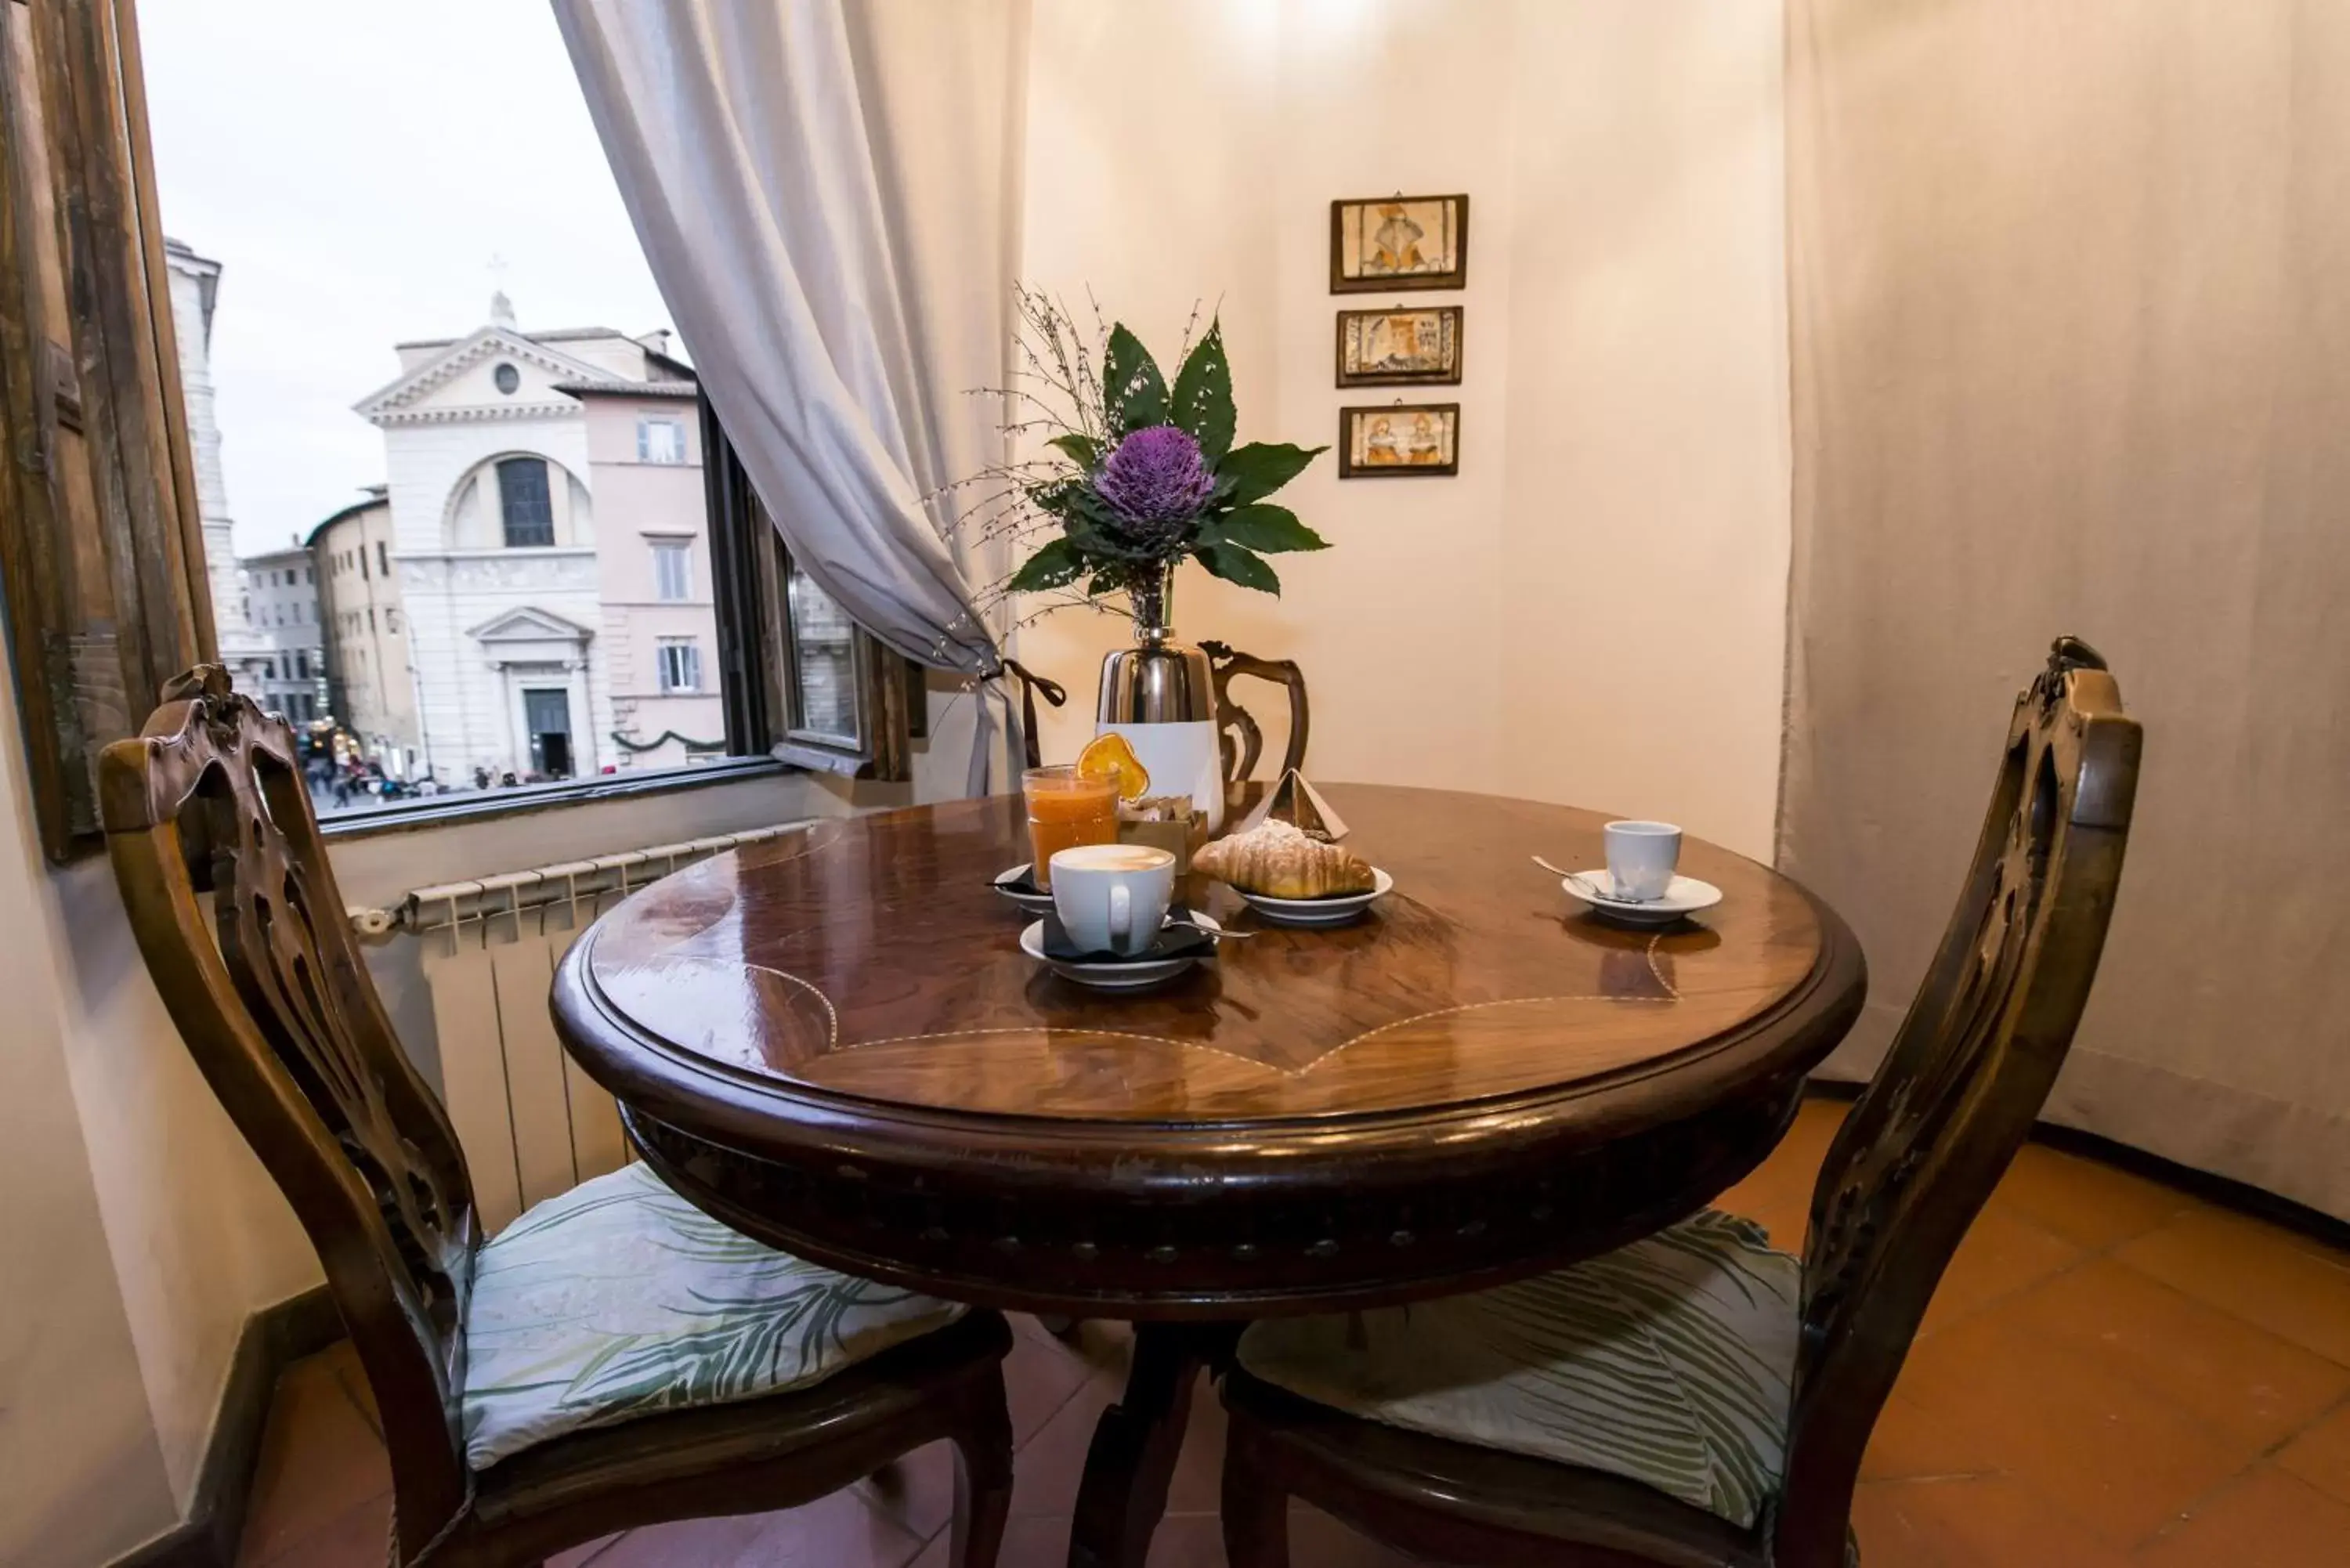 Seating area, Dining Area in Residenze Romanae - Vicolo dell'Aquila